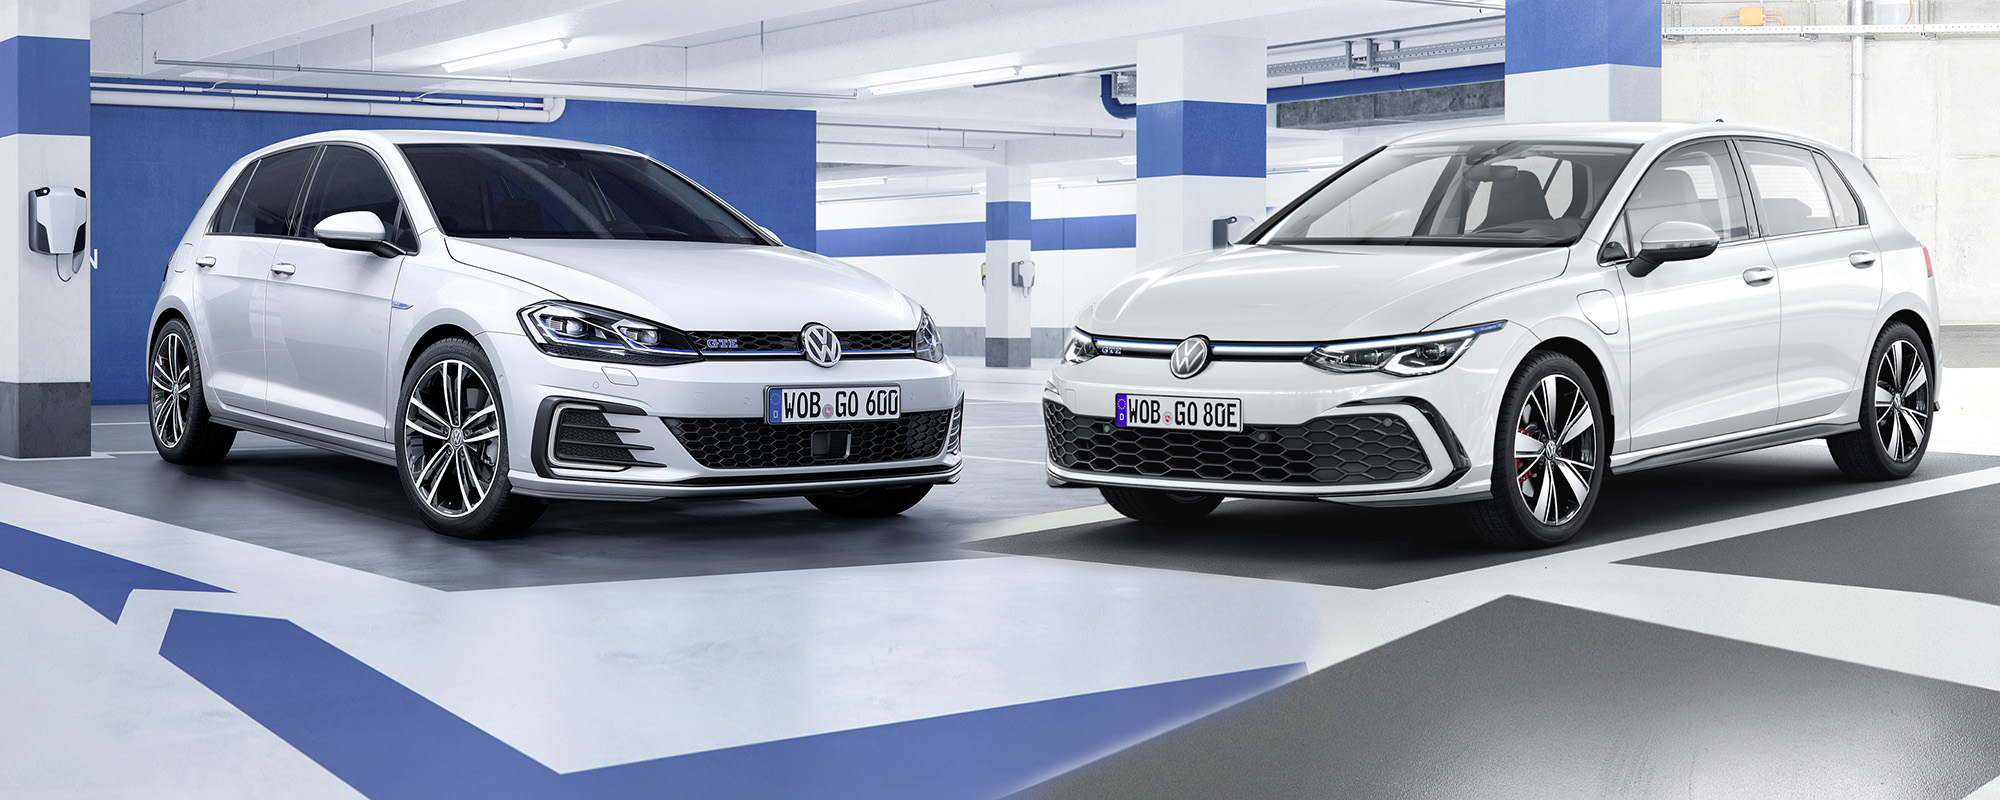 https://autofilou.at/app/uploads/2019/11/000a-2017-VW-Golf-VII-vs-2020-VW-Golf-VIII-GTE-comparison-vergleich-Unterschiede-%C3%84nderungen-changes-Neuerungen.jpg